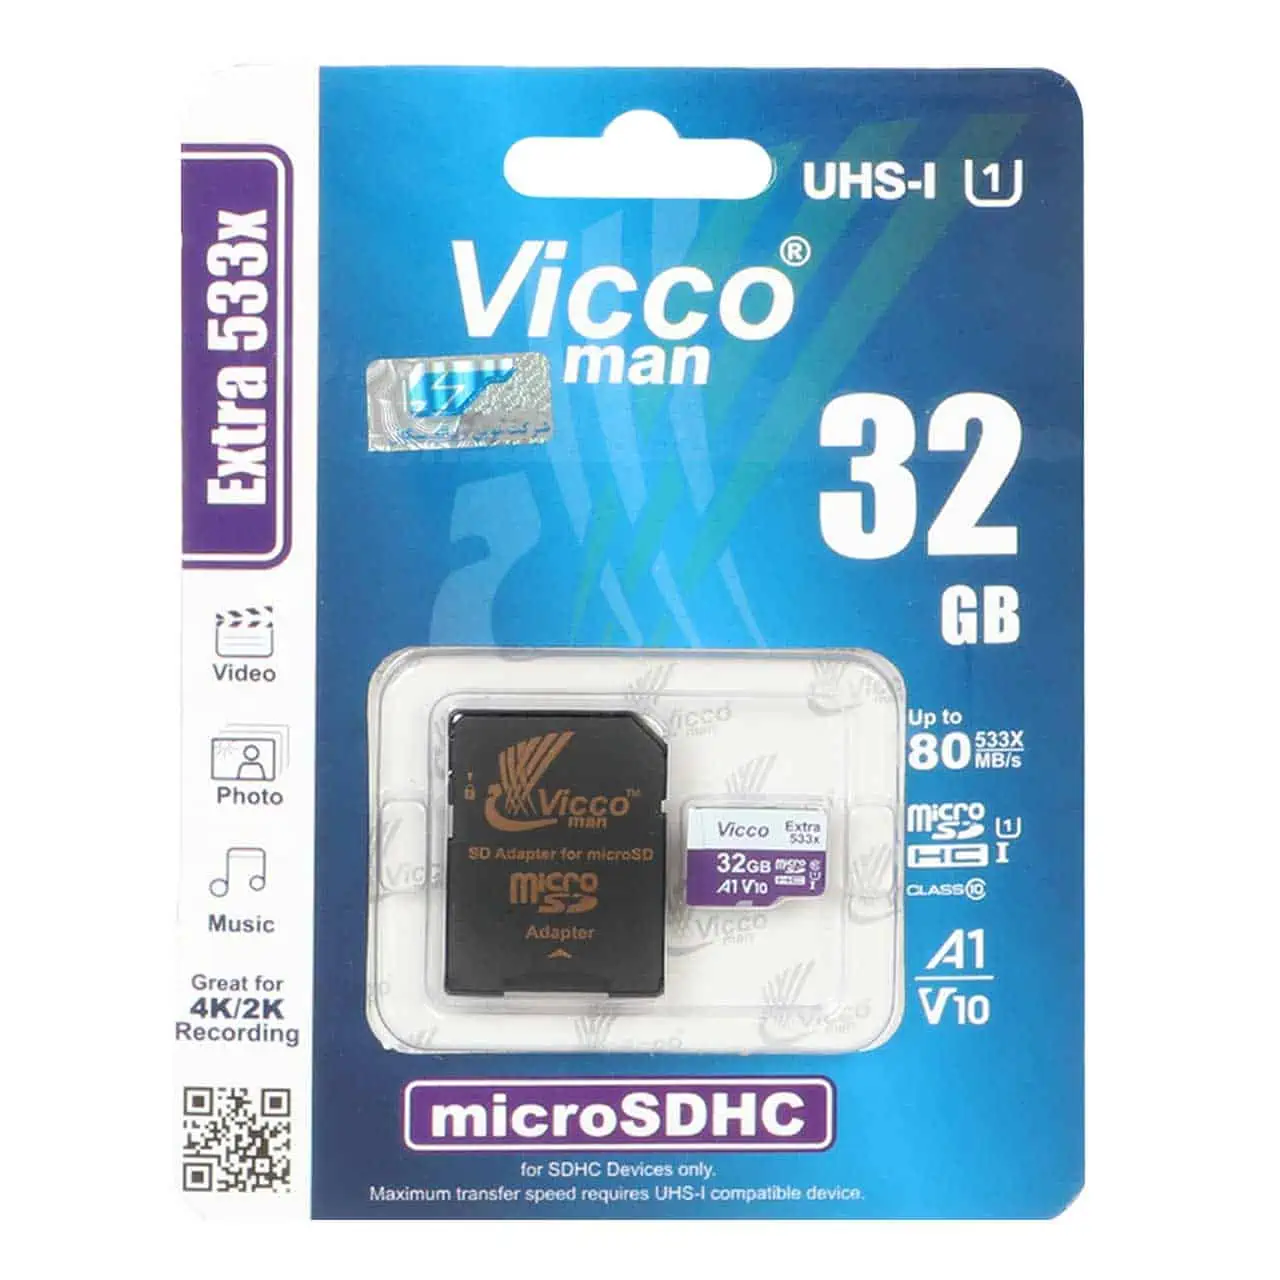 کارت حافظه MicroSDHC & adaptor ویکومن مدل Extra 533X UHS-I U1 کلاس 10 سرعت 80MB/s ظرفیت 32 گیگابایت